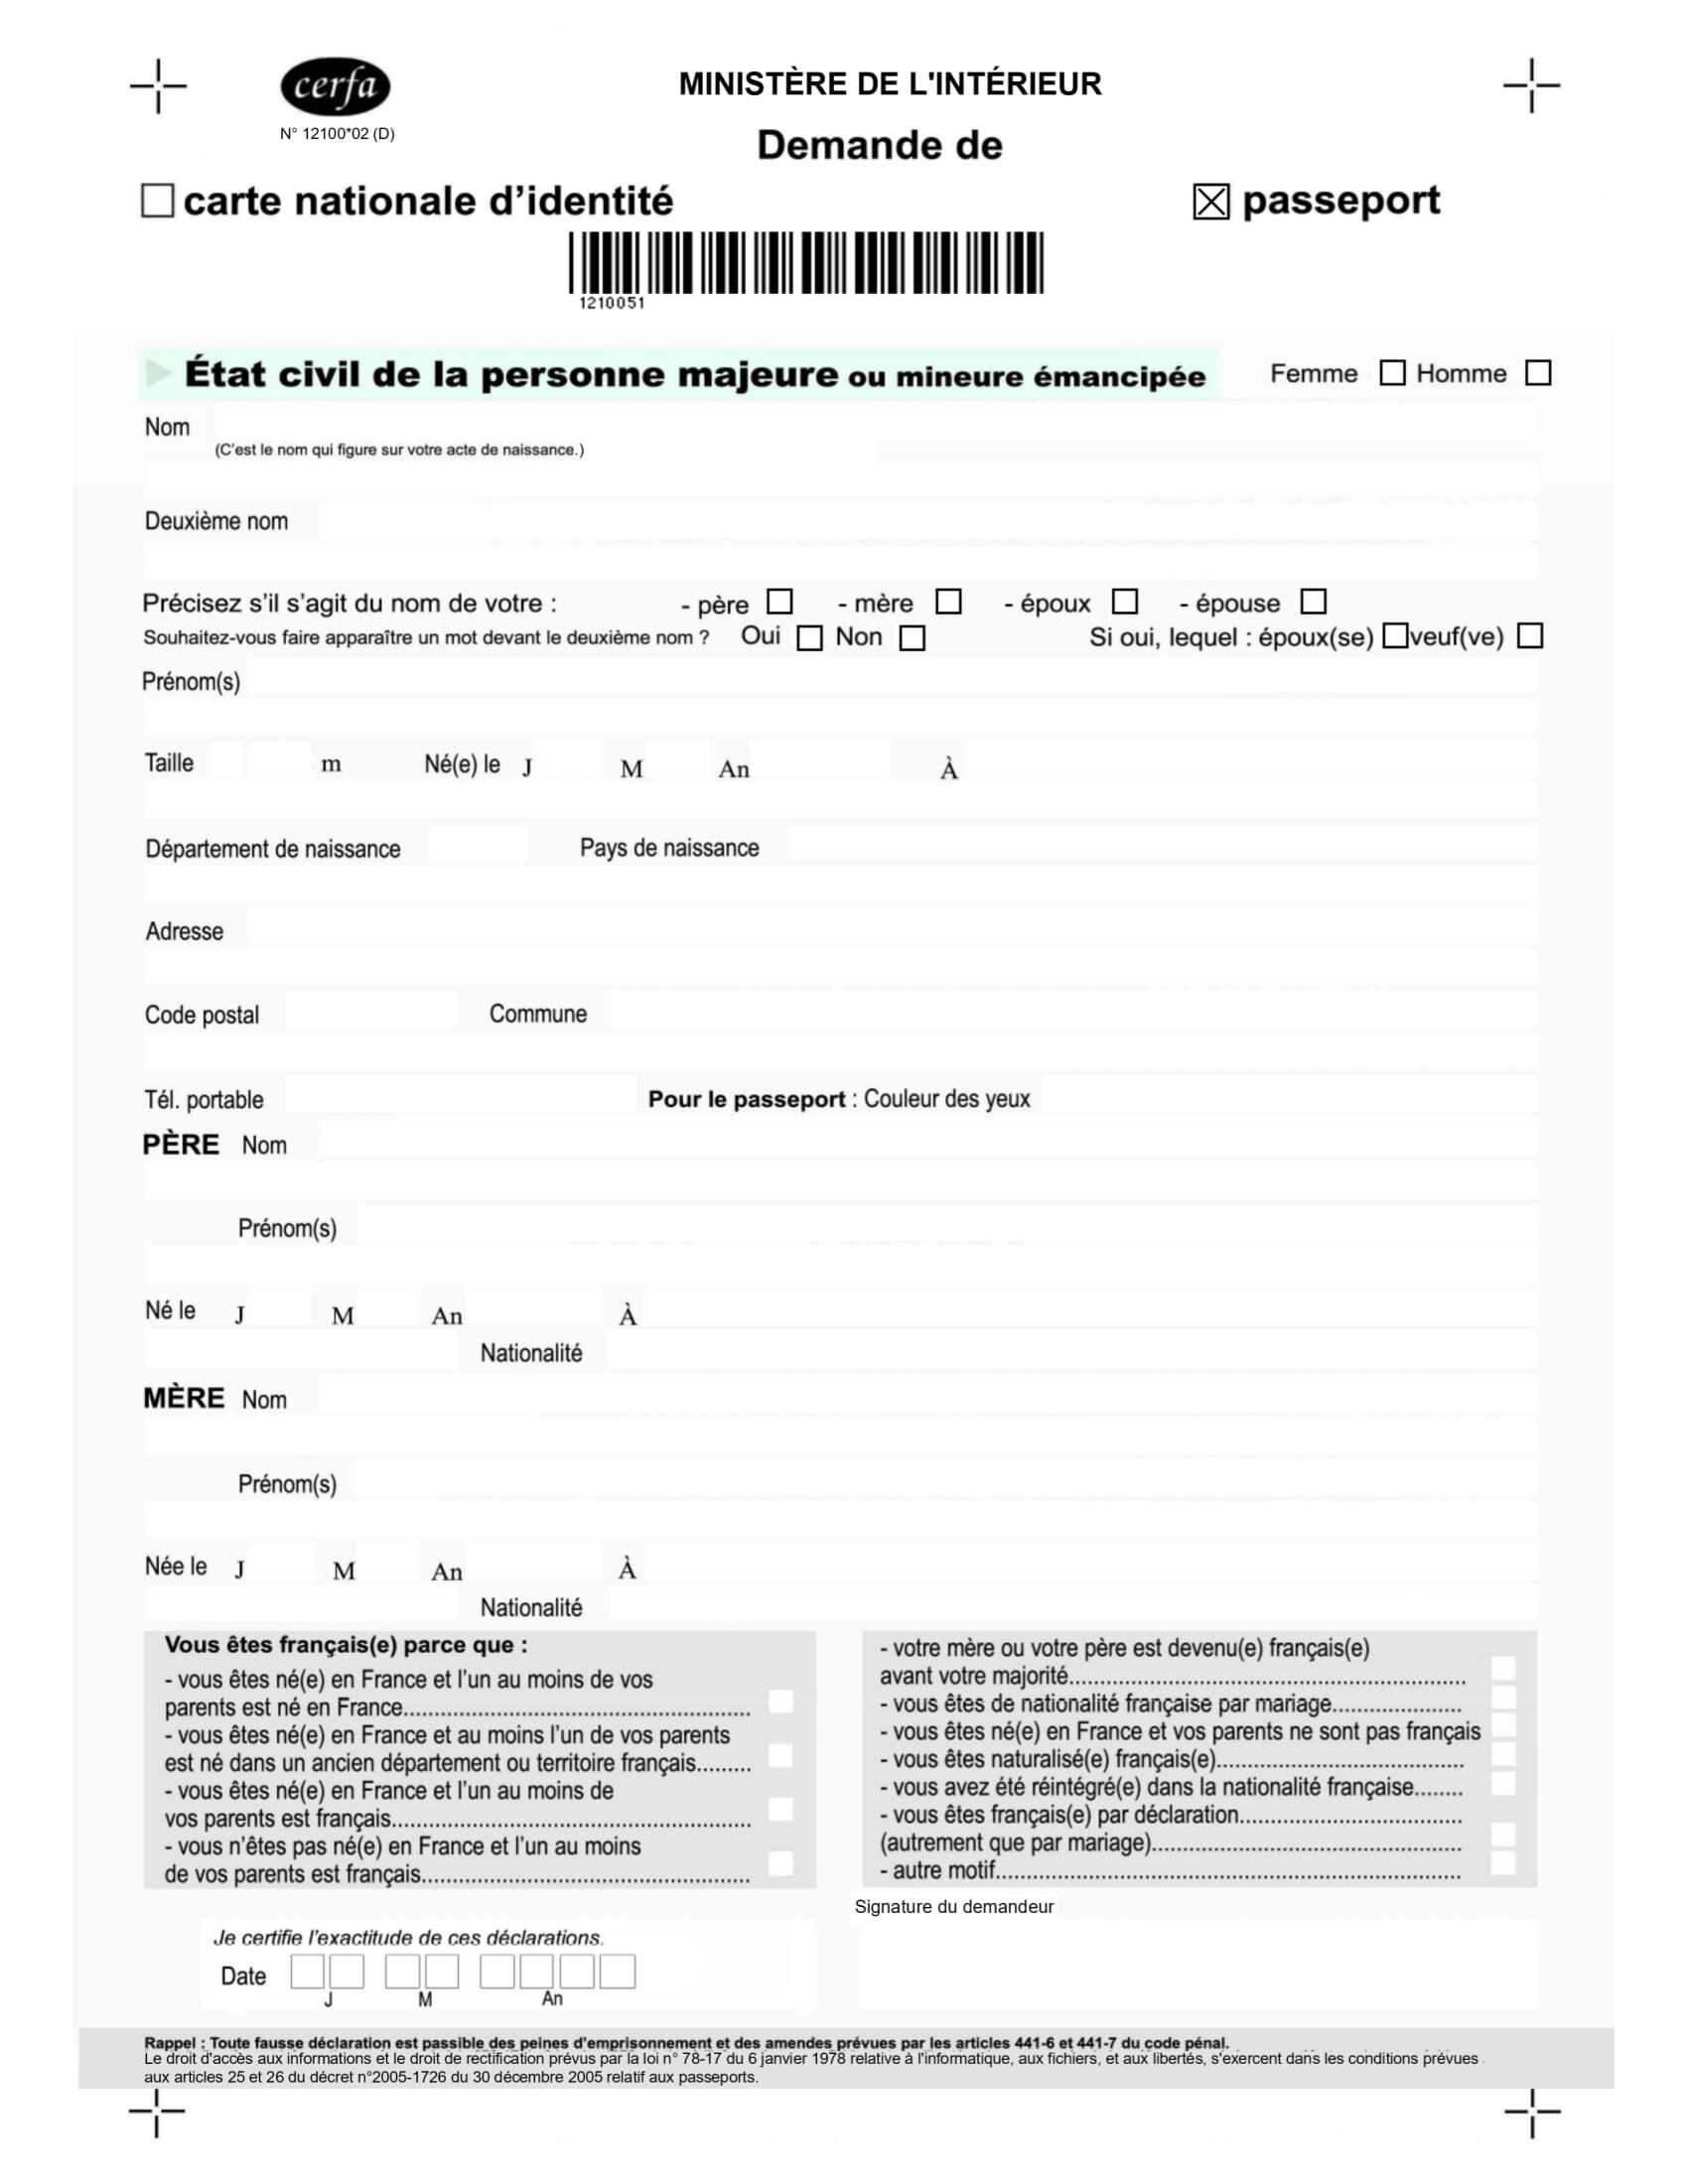 Formulaire de demande de passeport CERFA 